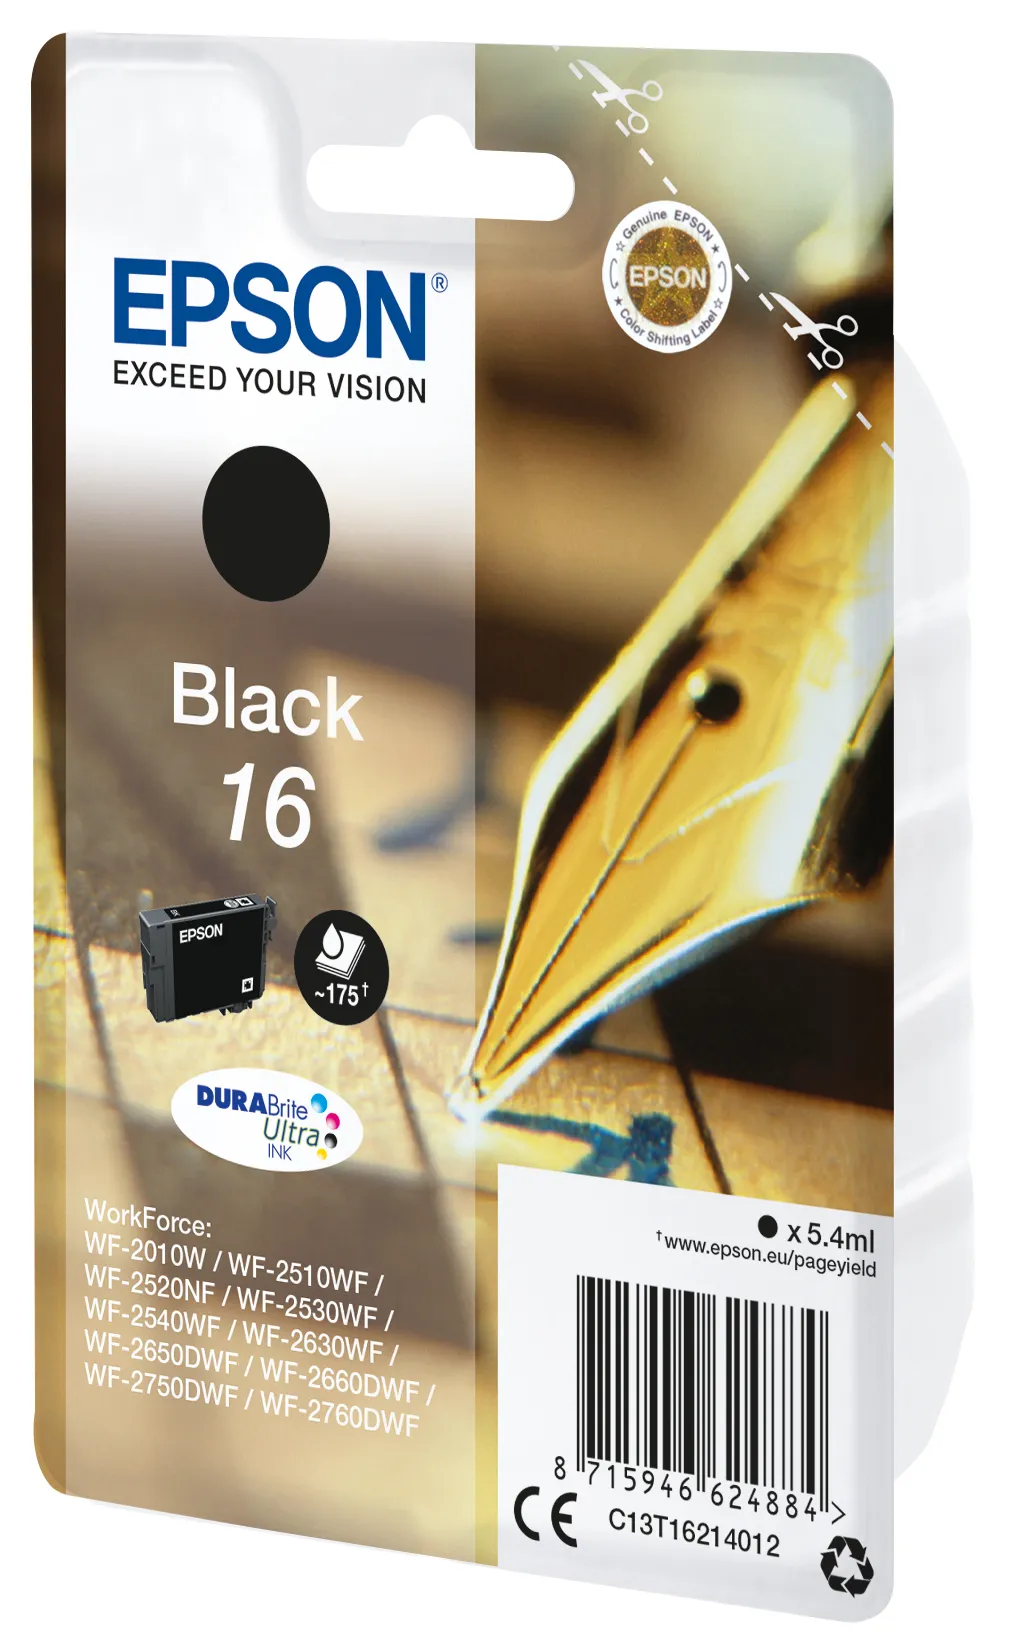 Vente EPSON 16 cartouche encre noir capacité standard 5.4ml Epson au meilleur prix - visuel 4